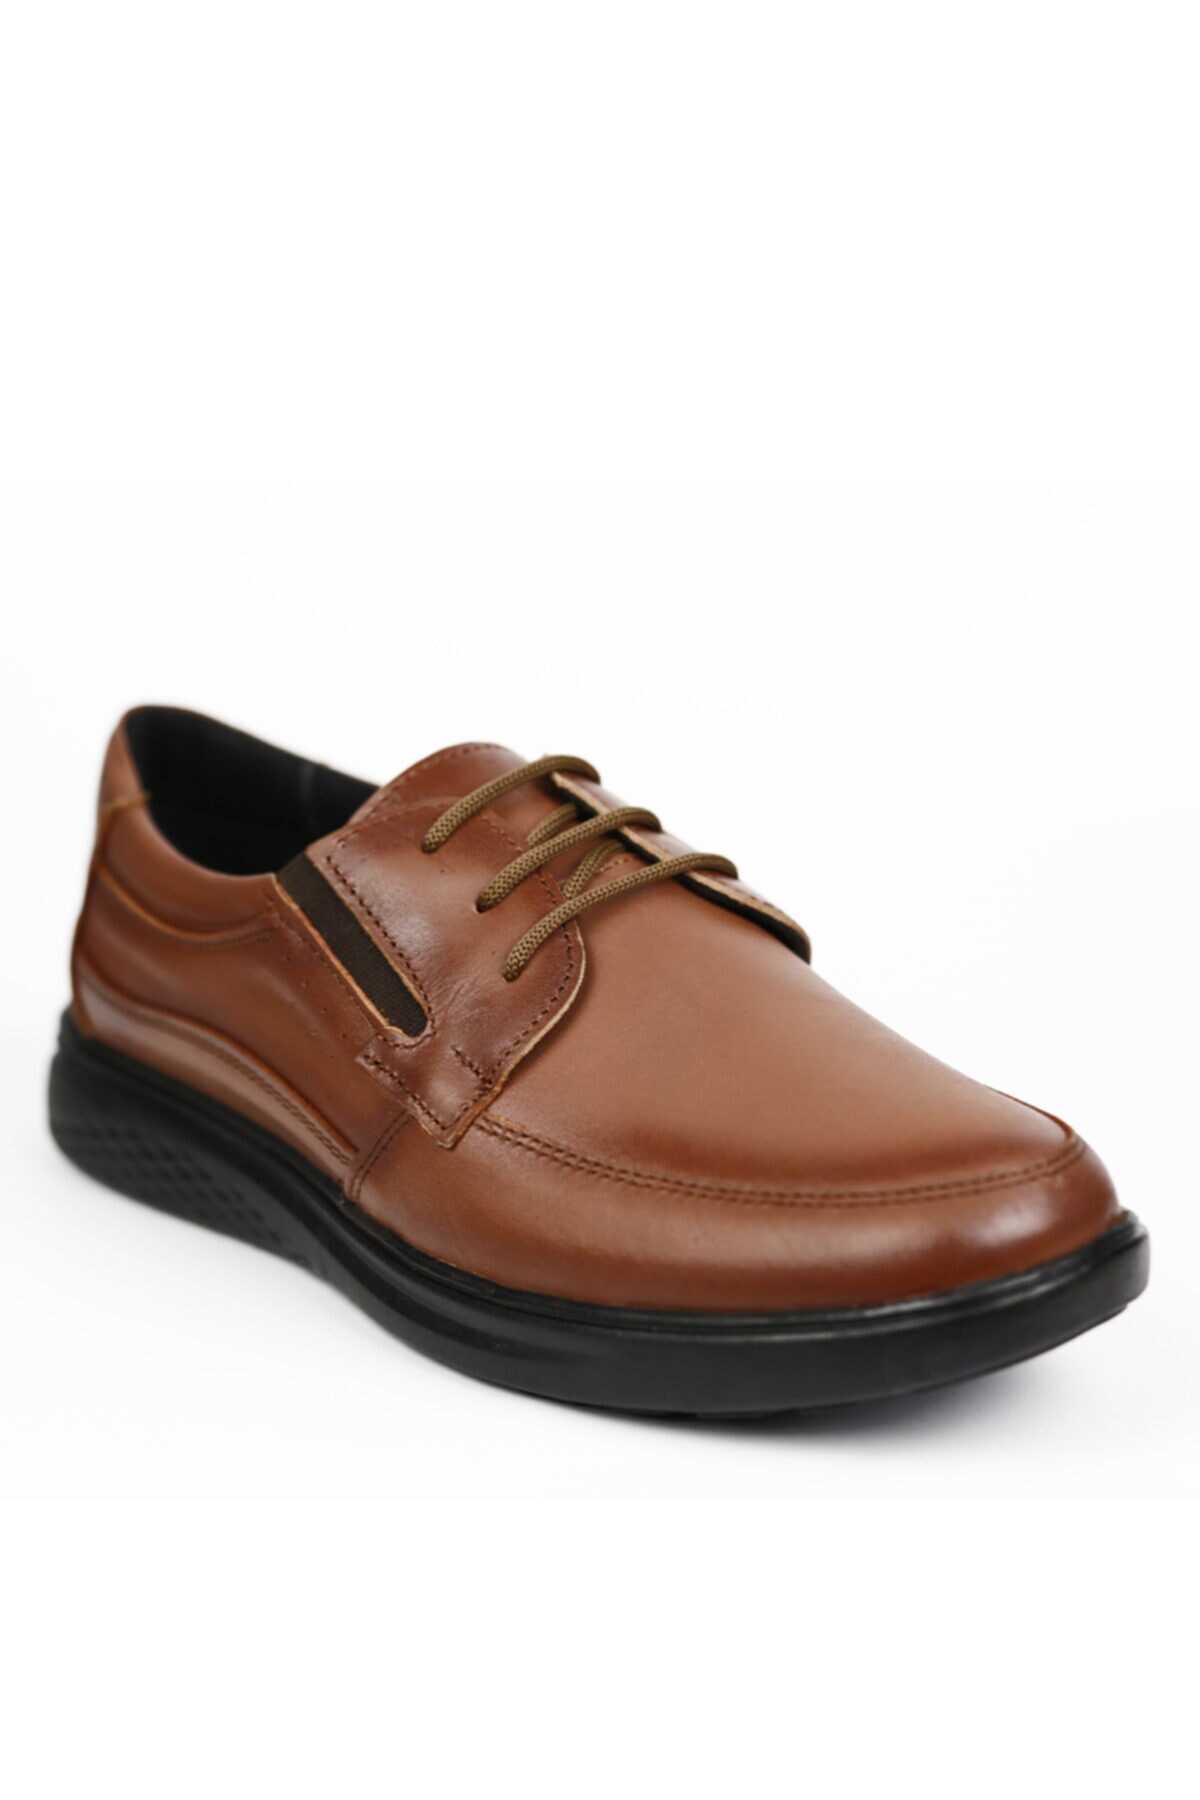 کفش کلاسیک چرم بدون بند مردانه قهوه ای برند MAGIC SHOES